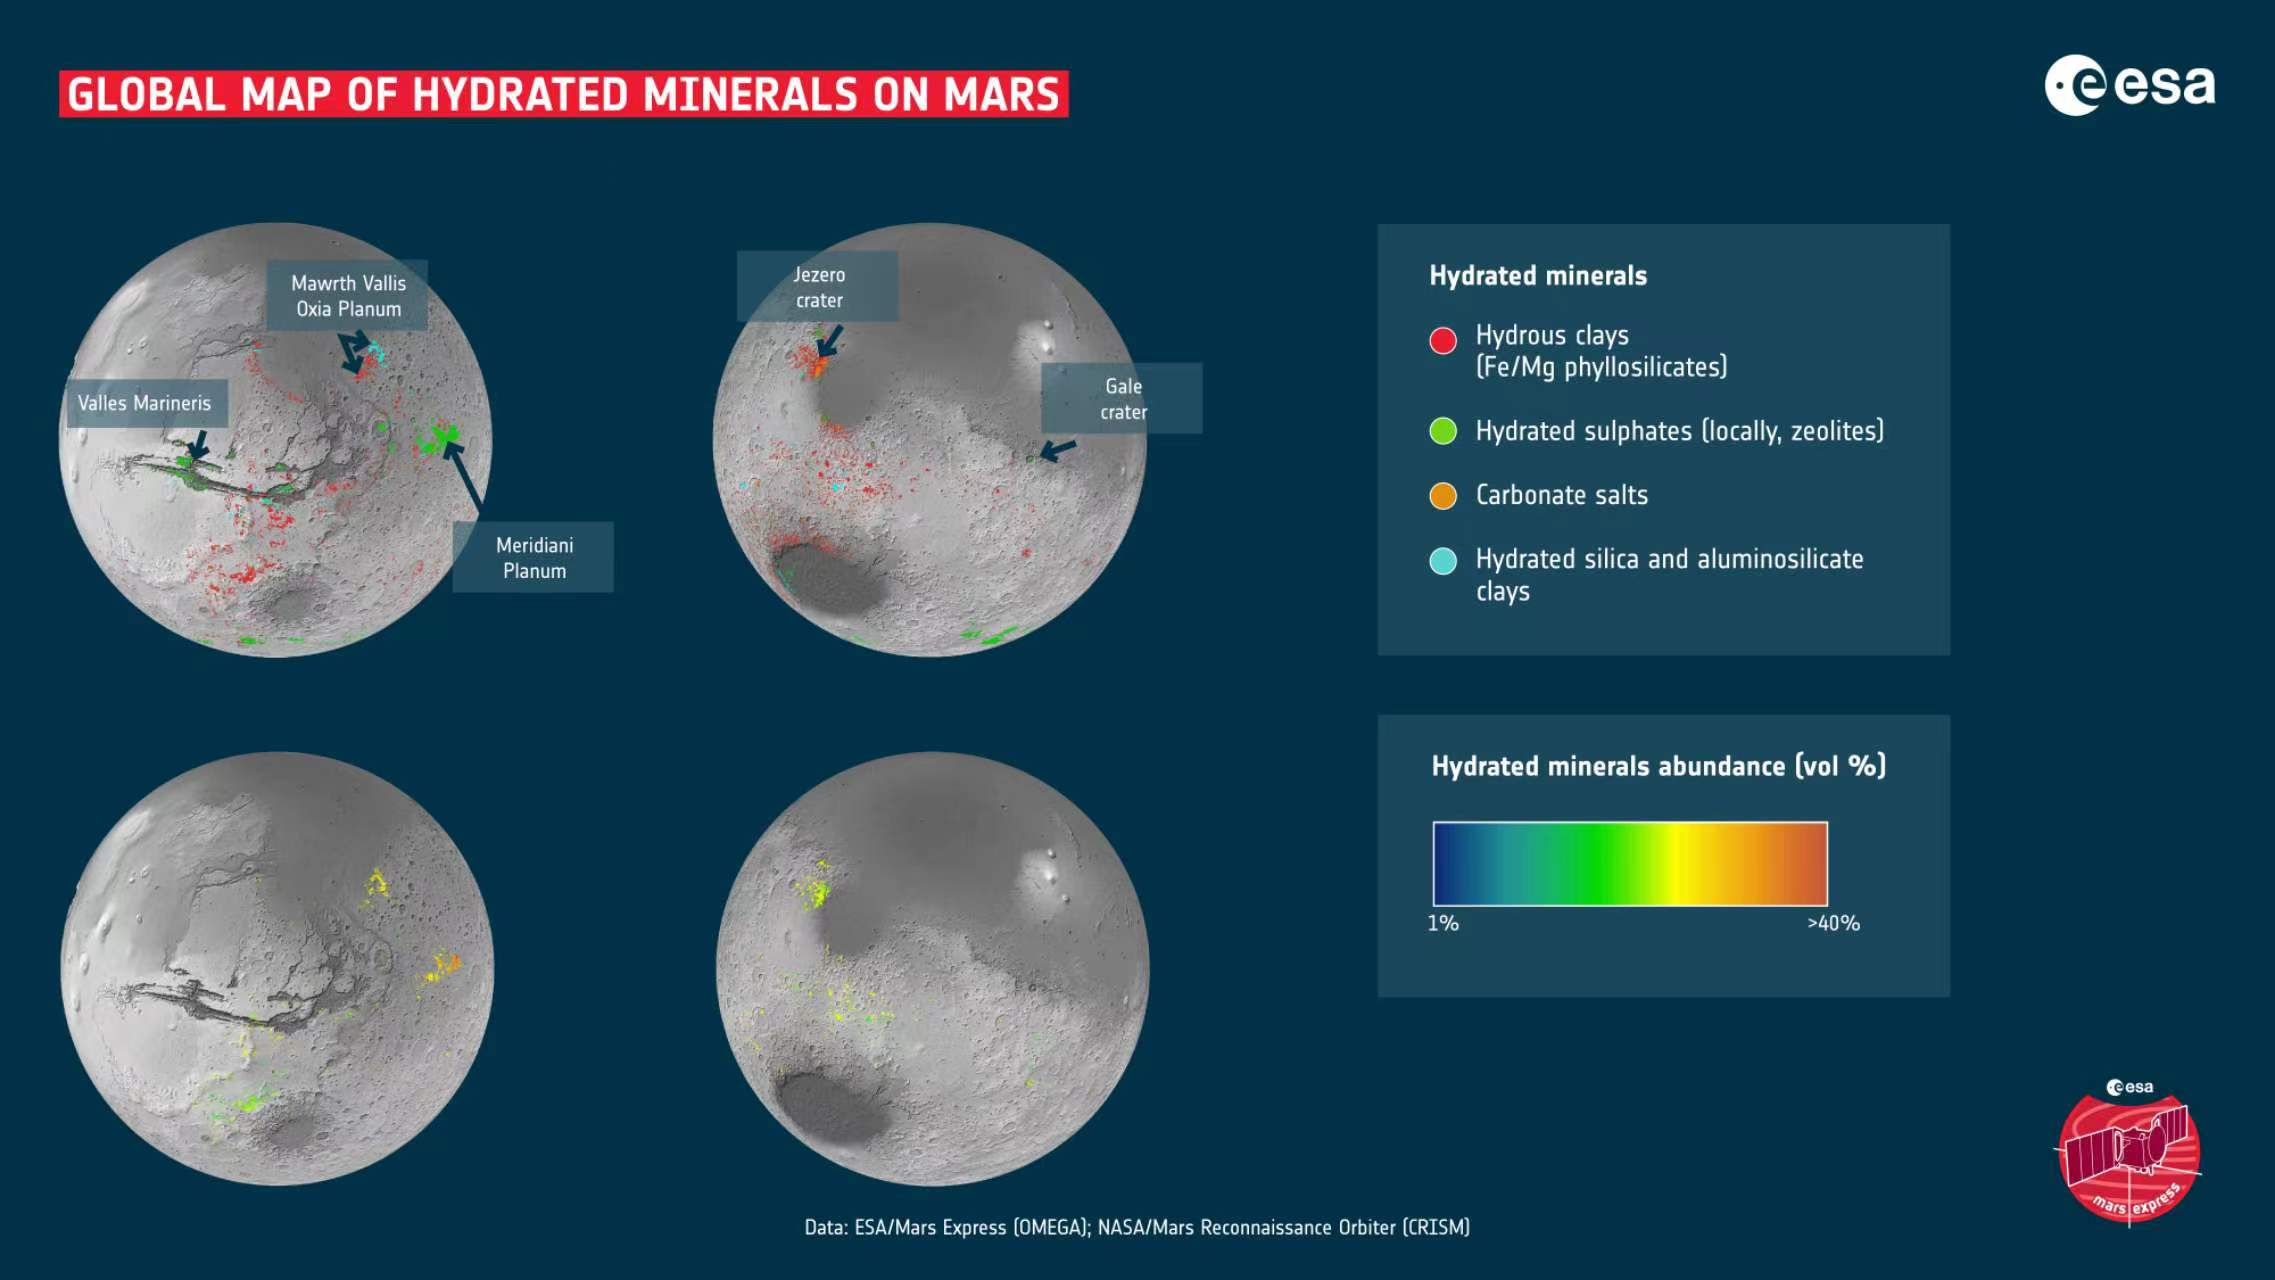 来自两次火星任务的数据被用来绘制火星上第一张详细的水合矿床全球地图。这些矿物主要是粘土和盐，可以用来描述地球各个地区的水历史。大多数情况下，粘土是在火星早期潮湿时期形成的，而今天仍然可见的许多盐是随着水逐渐干涸而产生的。 地图上显示了各种着陆点和感兴趣的地区。 Mawrth Vallis 是一条古老的流出水道，富含粘土。 Oxia Planum 是另一个富含粘土的地区，已被选为欧空局 Rosalind Franklin 漫游者的着陆点。子午线平原横跨火星赤道，是 2004 年 NASA 火星探测车机遇号的着陆点。马里内里斯山谷是太阳系中最大的峡谷之一。盖尔陨石坑和耶泽罗陨石坑分别是 2012 年和 2020 年 NASA 好奇号和毅力号探测器的着陆点。 地图上显示的粘土包括铁和镁层状硅酸盐、沸石和铝硅酸盐粘土。所示的盐是由碳和氧组成的碳酸盐。